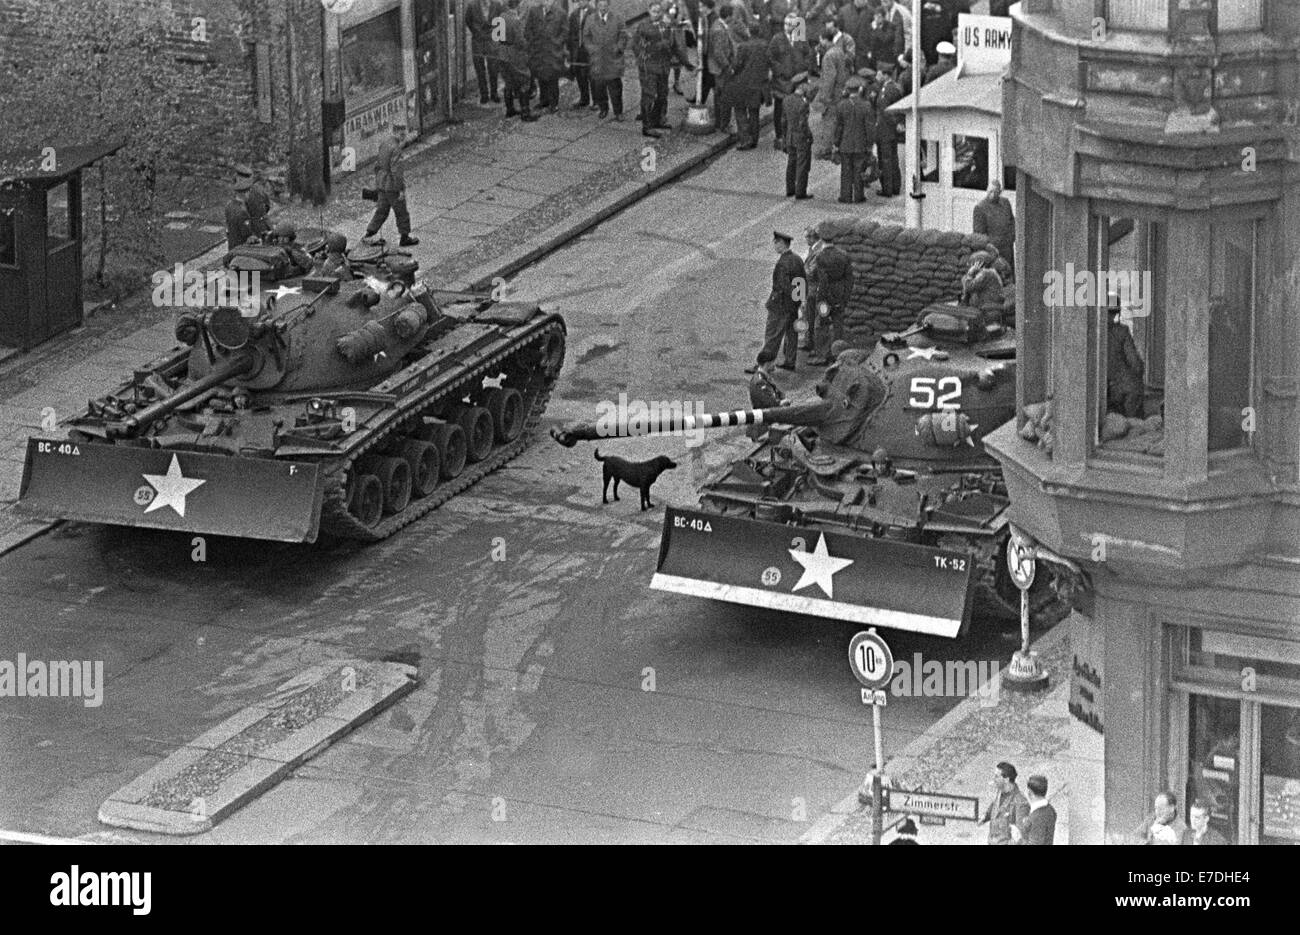 Amerikanische Panzer parken am Grenzübergang Checkpoint Charlie auf der Friedrichstraße in Berlin, Deutschland, 27. Oktober 1961. Nach einem Zwischenfall an der Grenze wurden sowjetische und amerikanische Panzer am Grenzübergang der Alliierten stationiert. Sie wurden einen Tag später ohne weitere Zwischenfälle wieder zurückgezogen. Fotoarchiv für Zeitgeschichtee - KEIN KABELDIENST Stockfoto